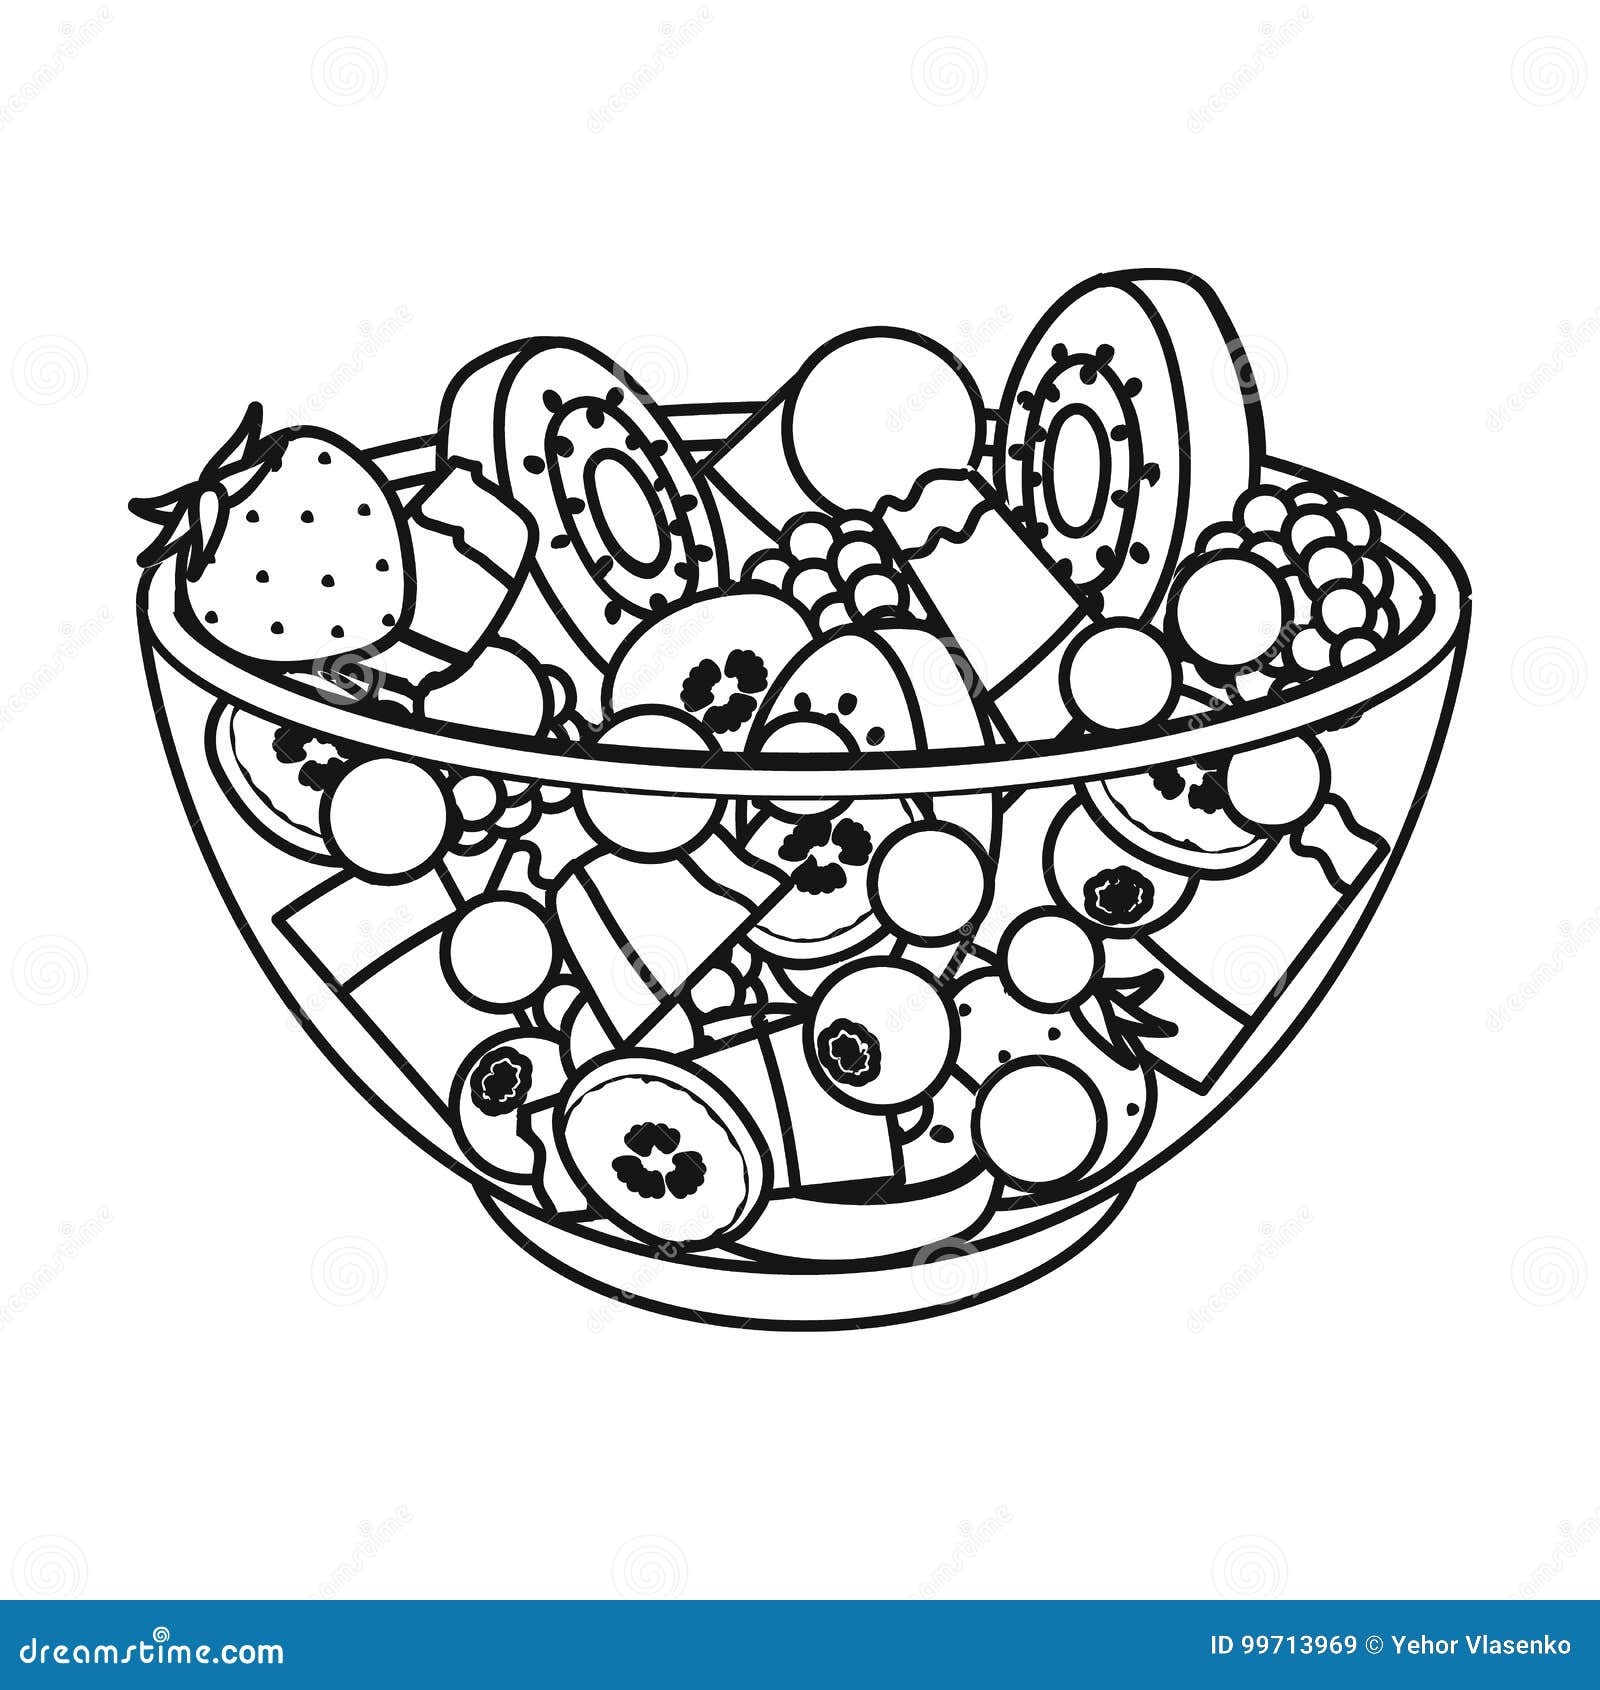 Разукрашка тарелки с фруктовым салатом